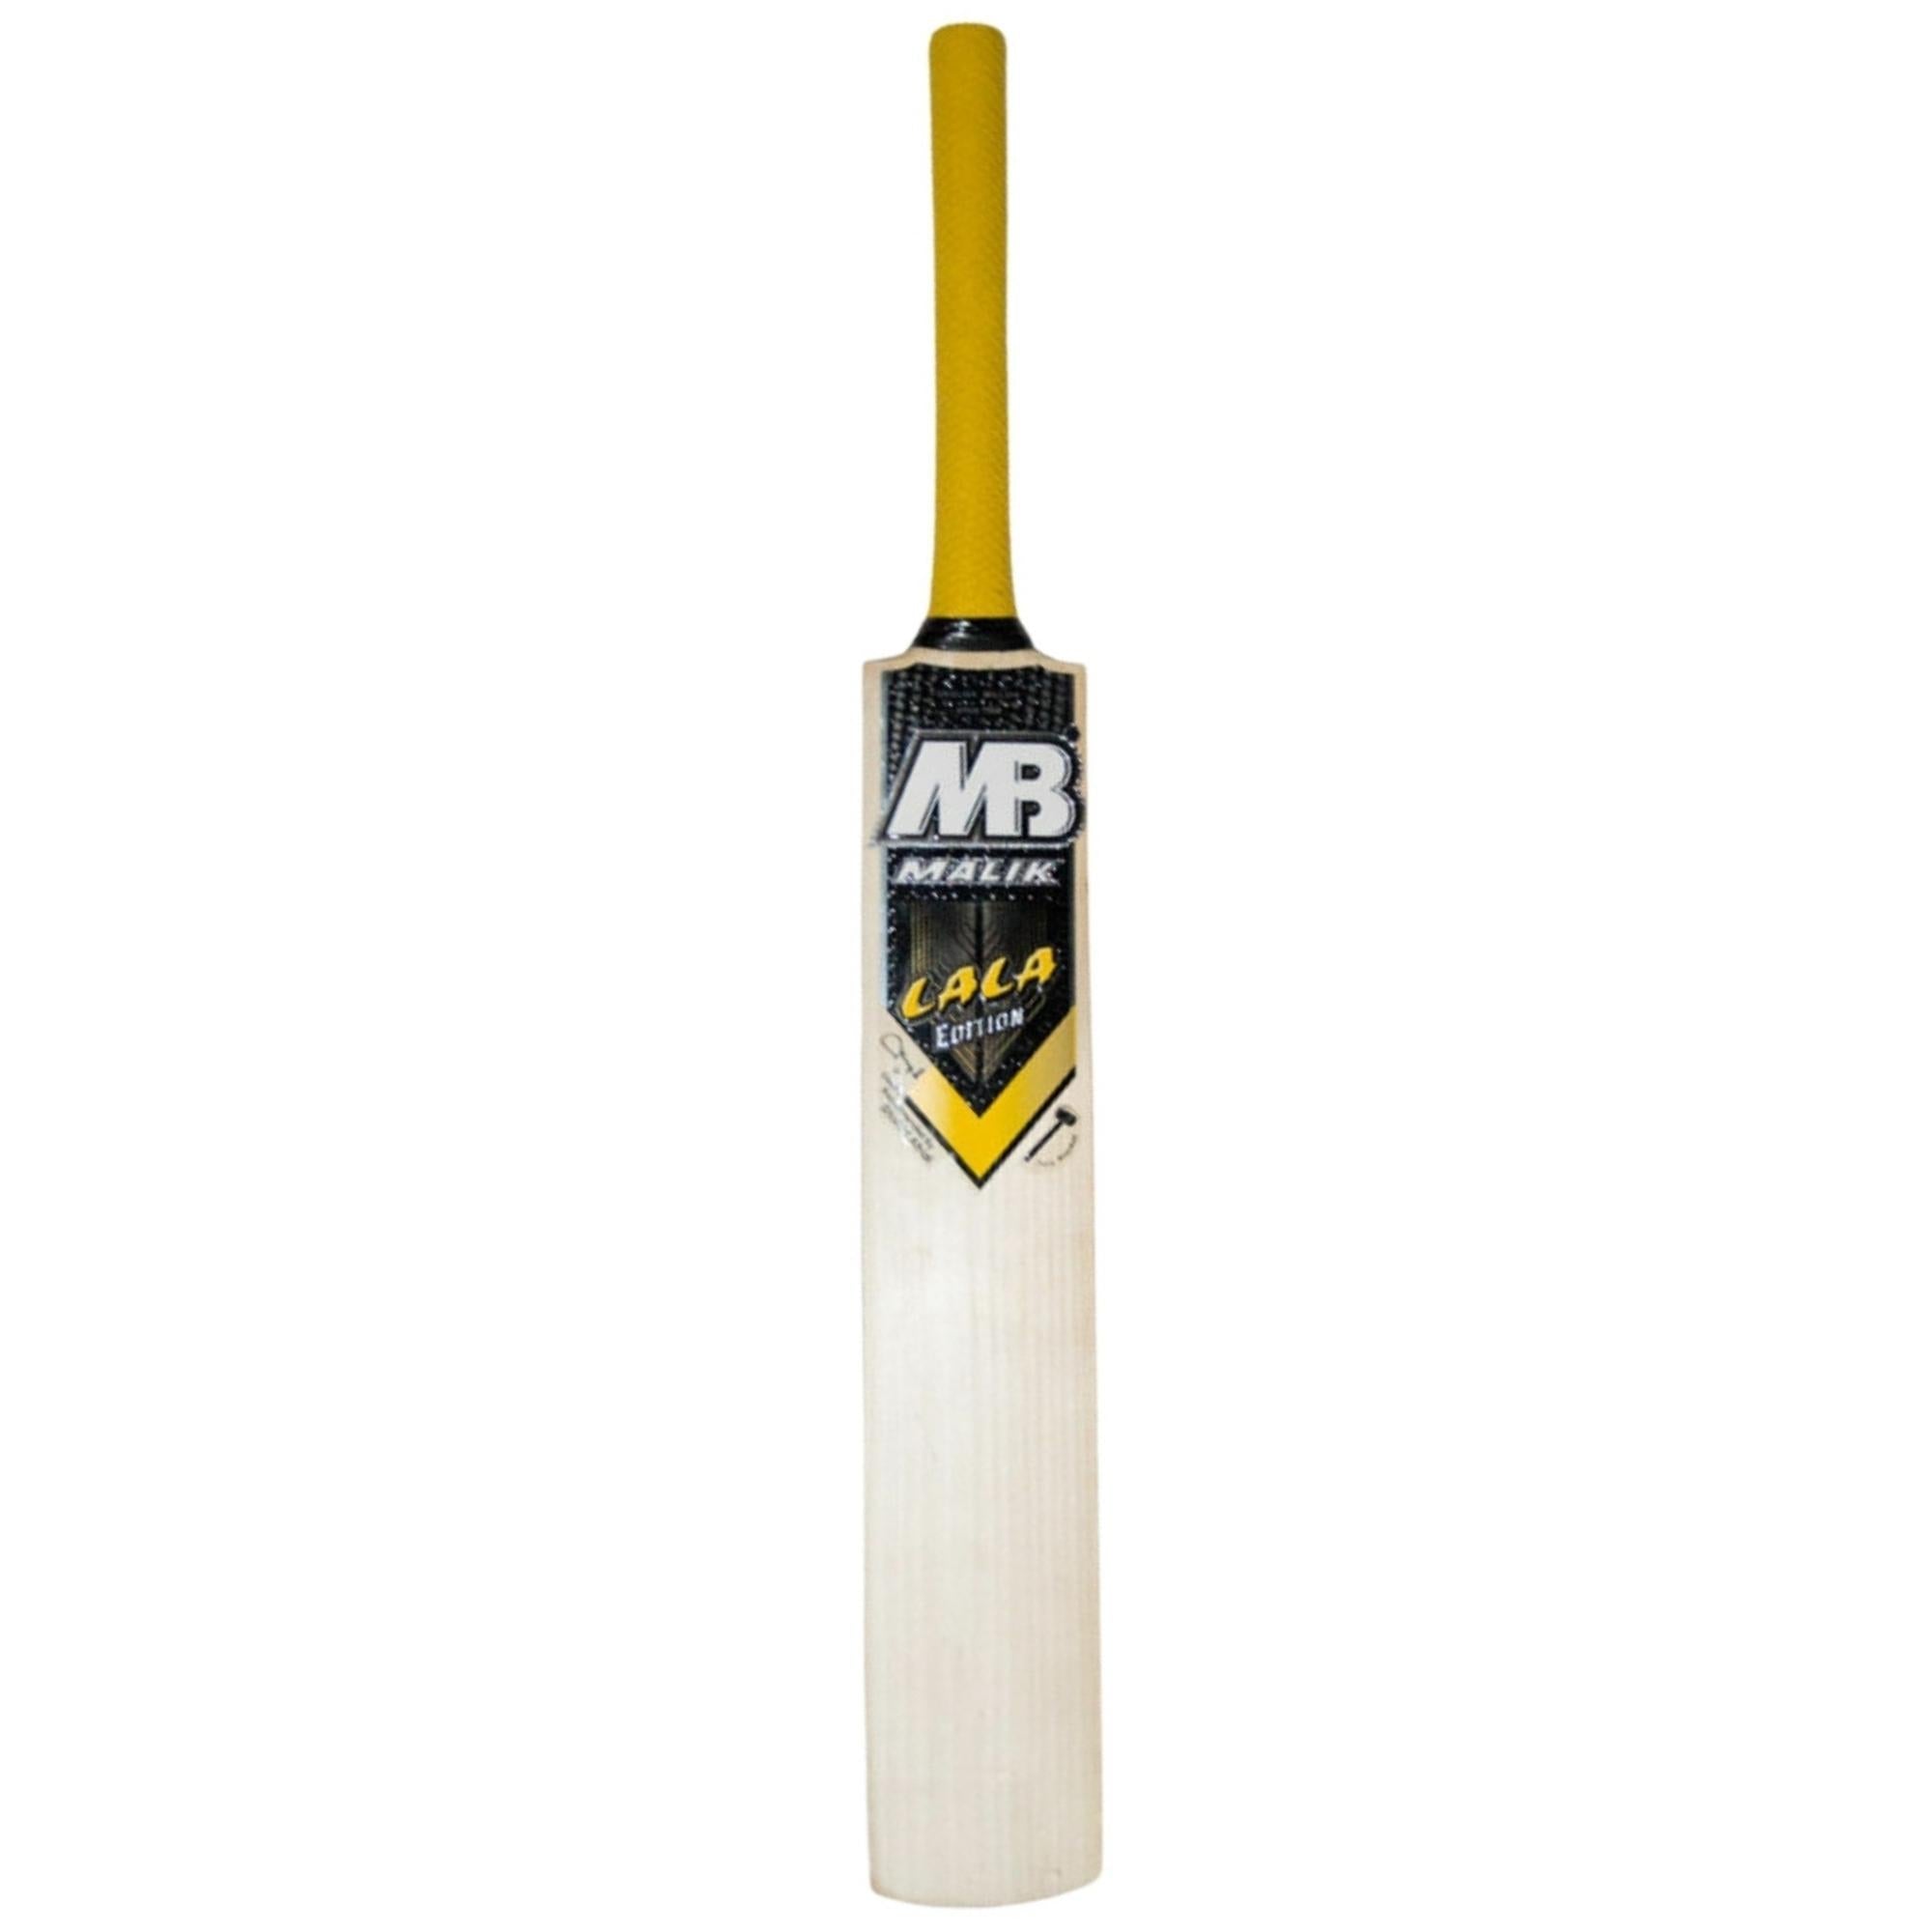 MB Malik Lala Gold Edition Cricket Bat